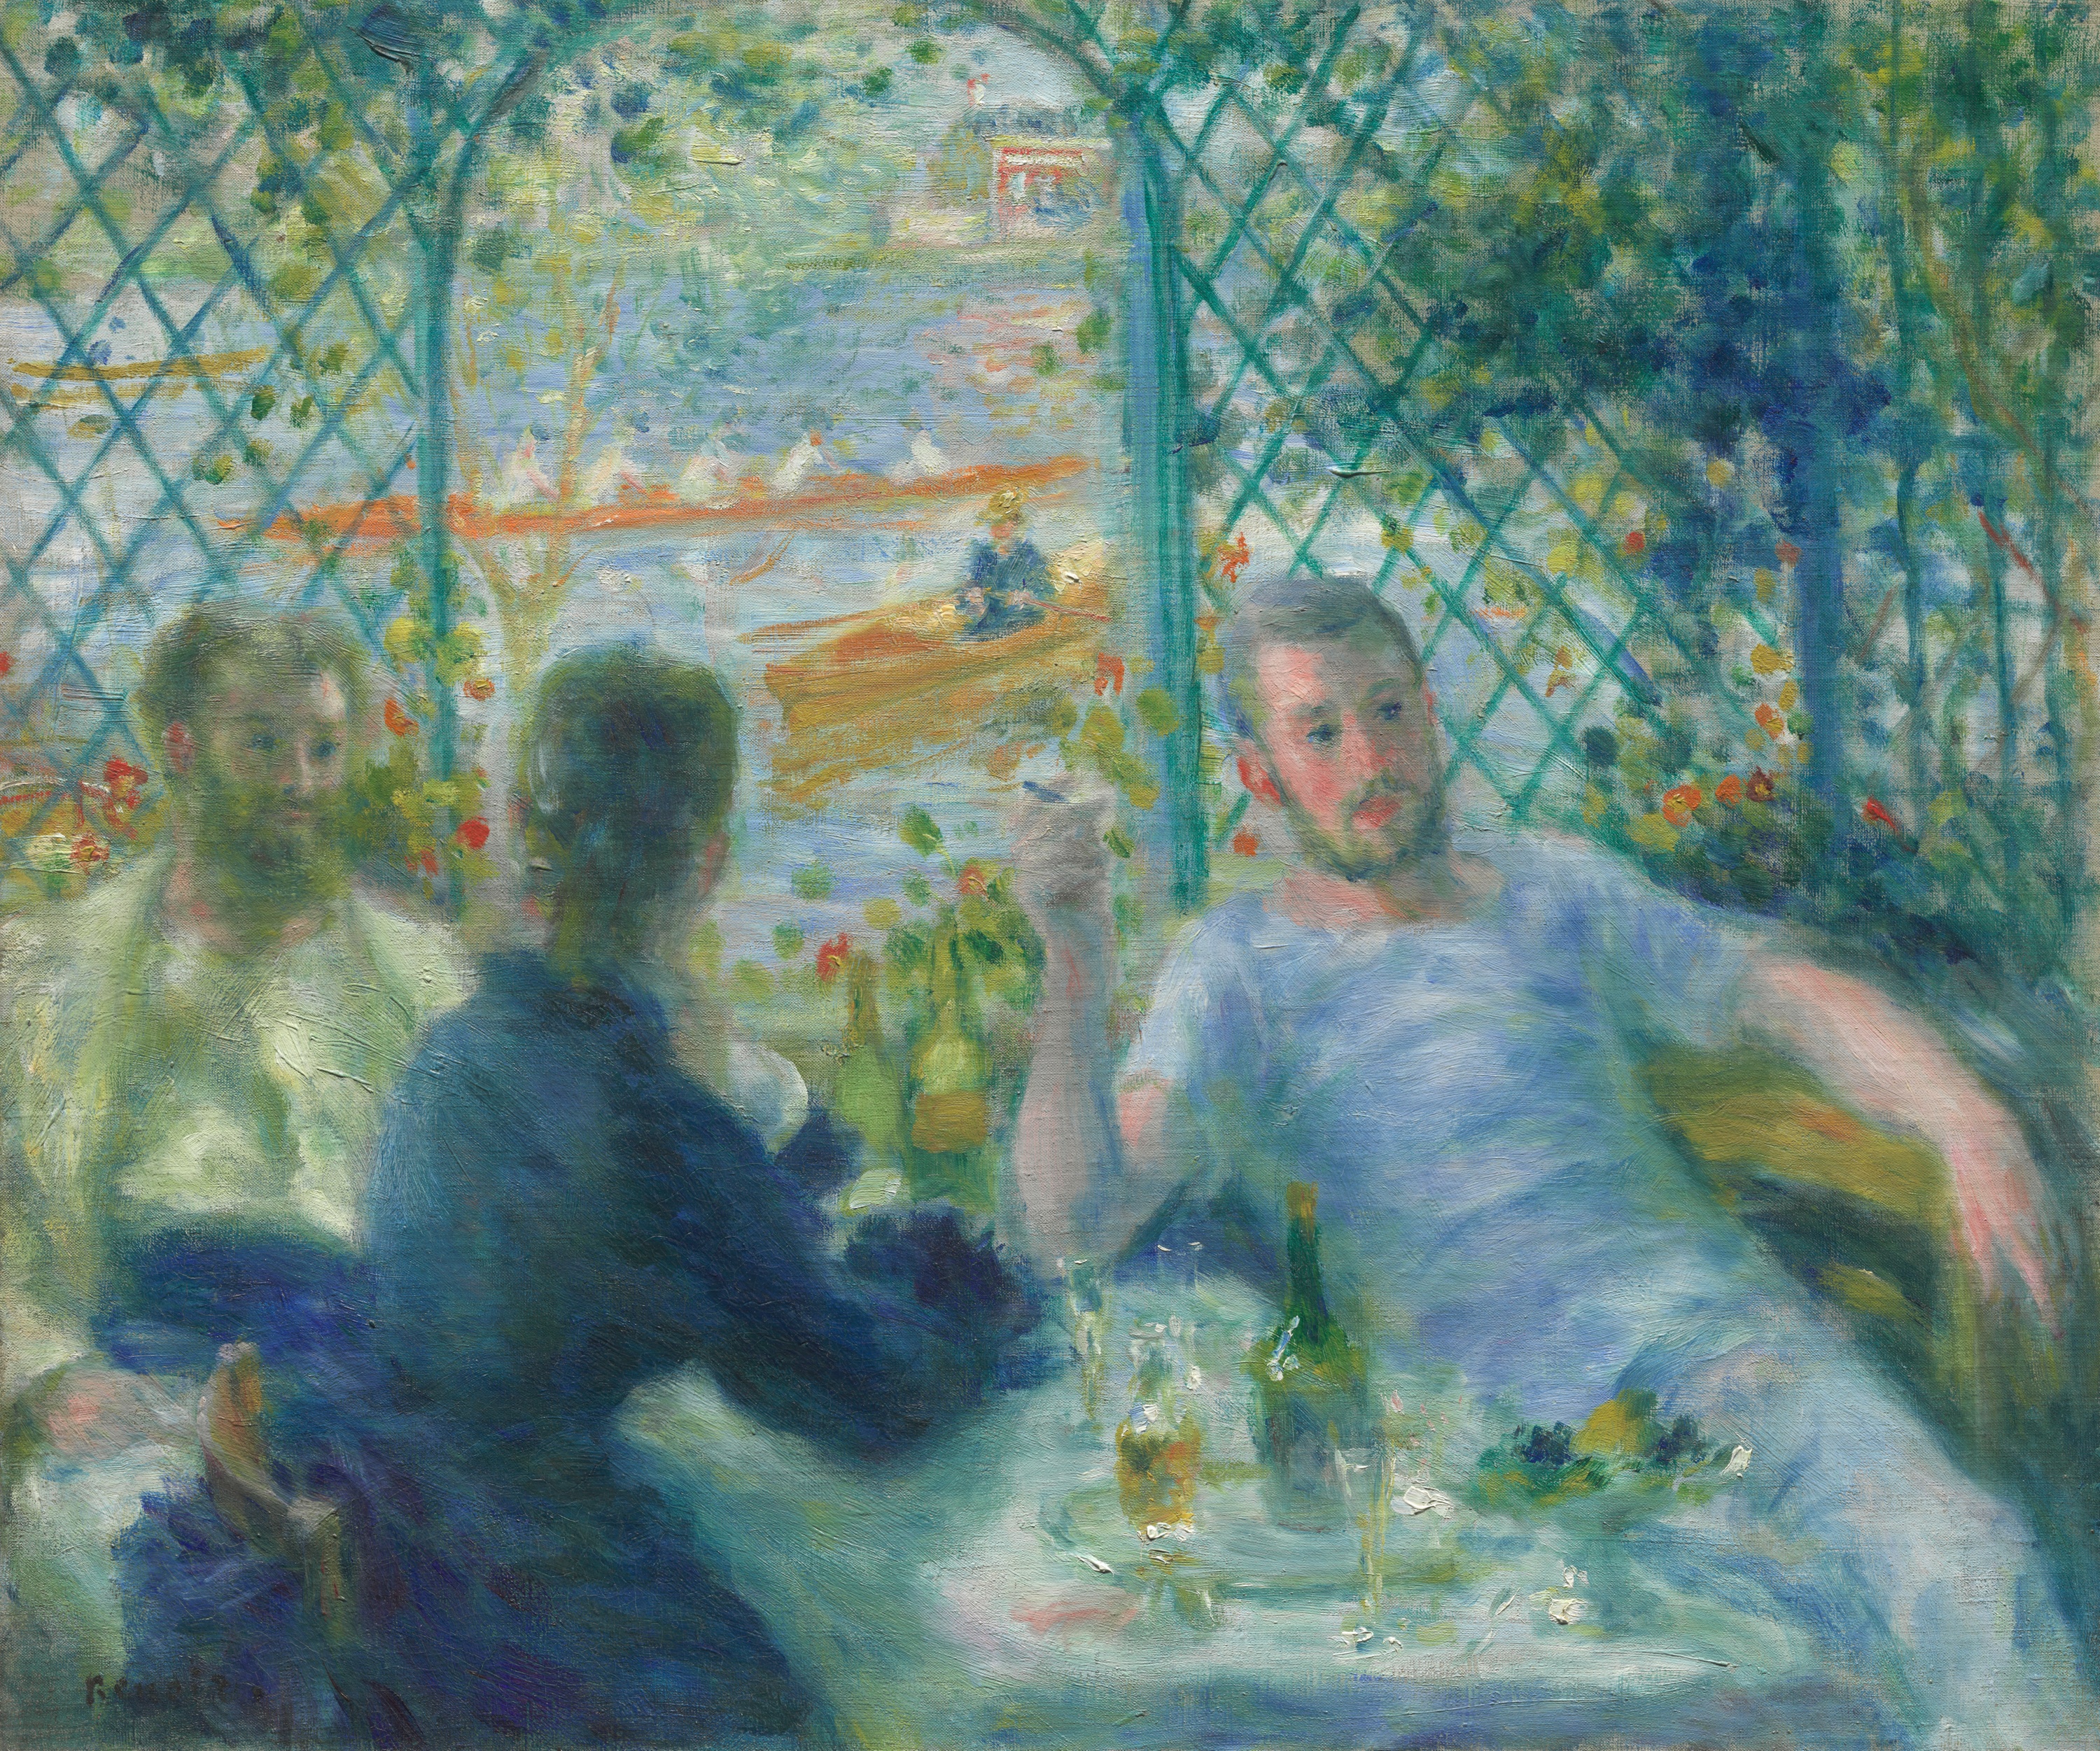 レストラン・フルネーズでの昼食 by Pierre-Auguste Renoir - 1875年 - 55 × 65.9 cm 